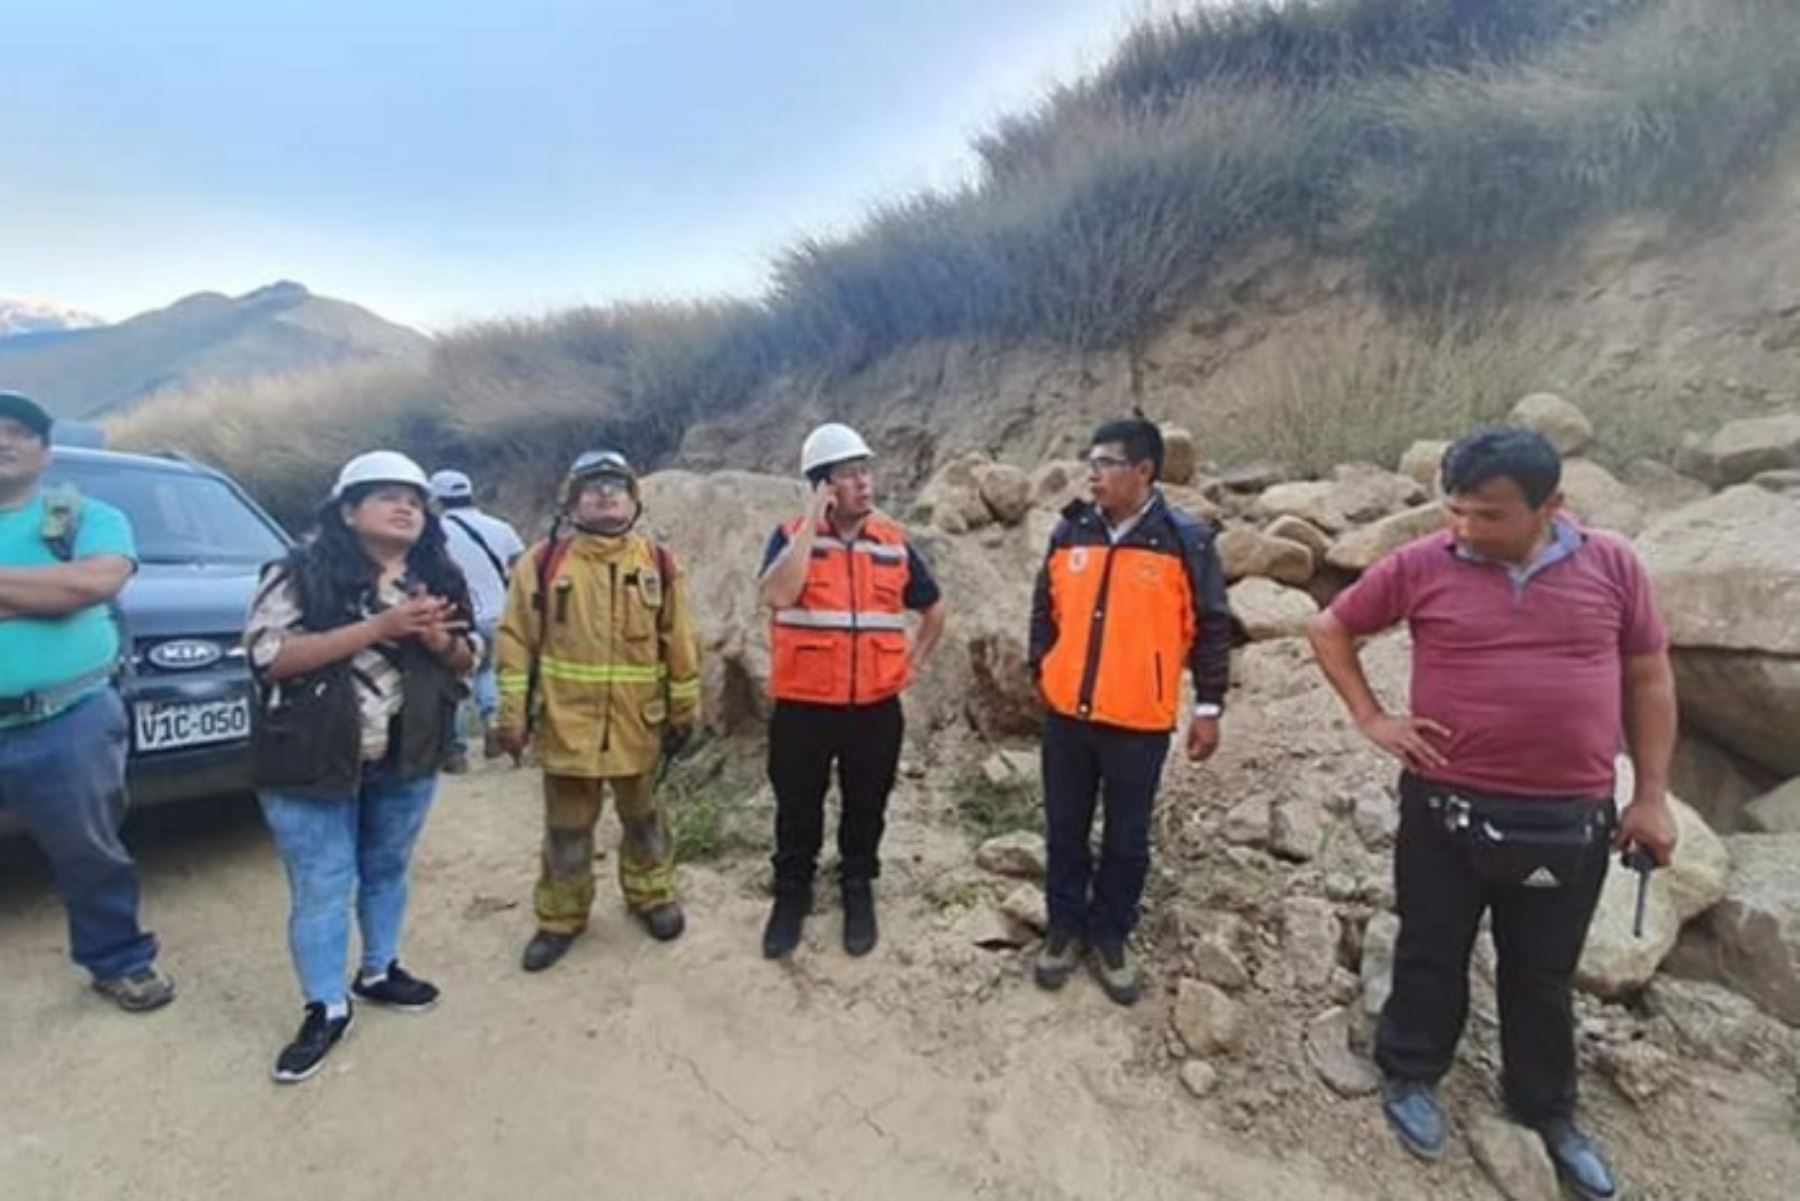 La creación de una compañía de bomberos en la ciudad de Machu Picchu, región Cusco, han propuesto las autoridades locales, para la protección y asistencia a la ciudadanía, turistas, el santuario histórico, así como el parque arqueológico y natural de Machu Picchu.